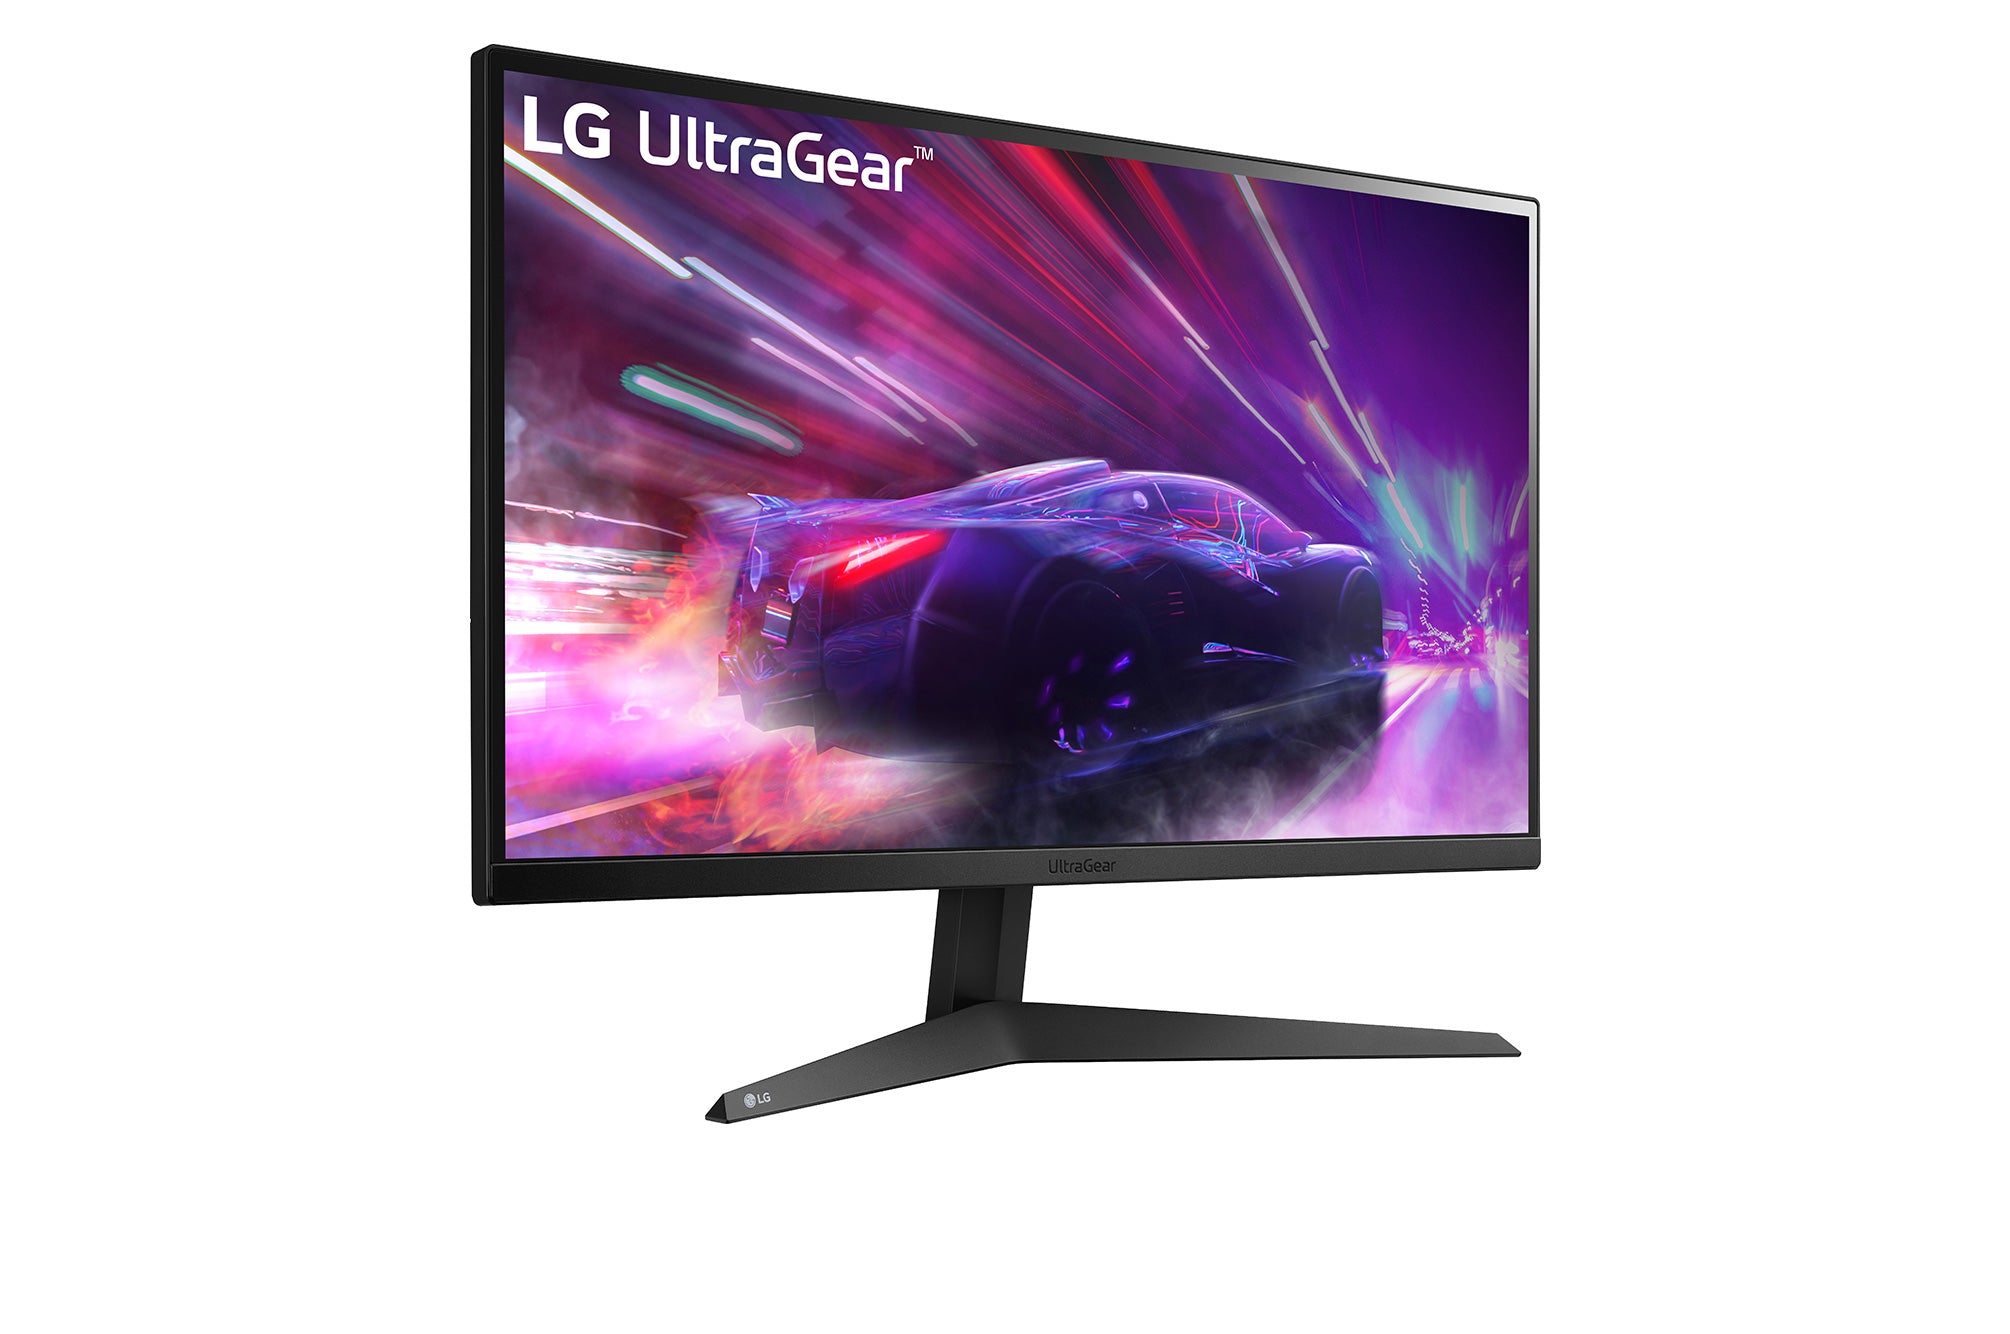 LG 27GQ50F UltraGear Monitor / 27 inch / 1920 x 1080 Resolution / AMD FreeSync Premium / Dynamic Action Sync / Black Stabilizer